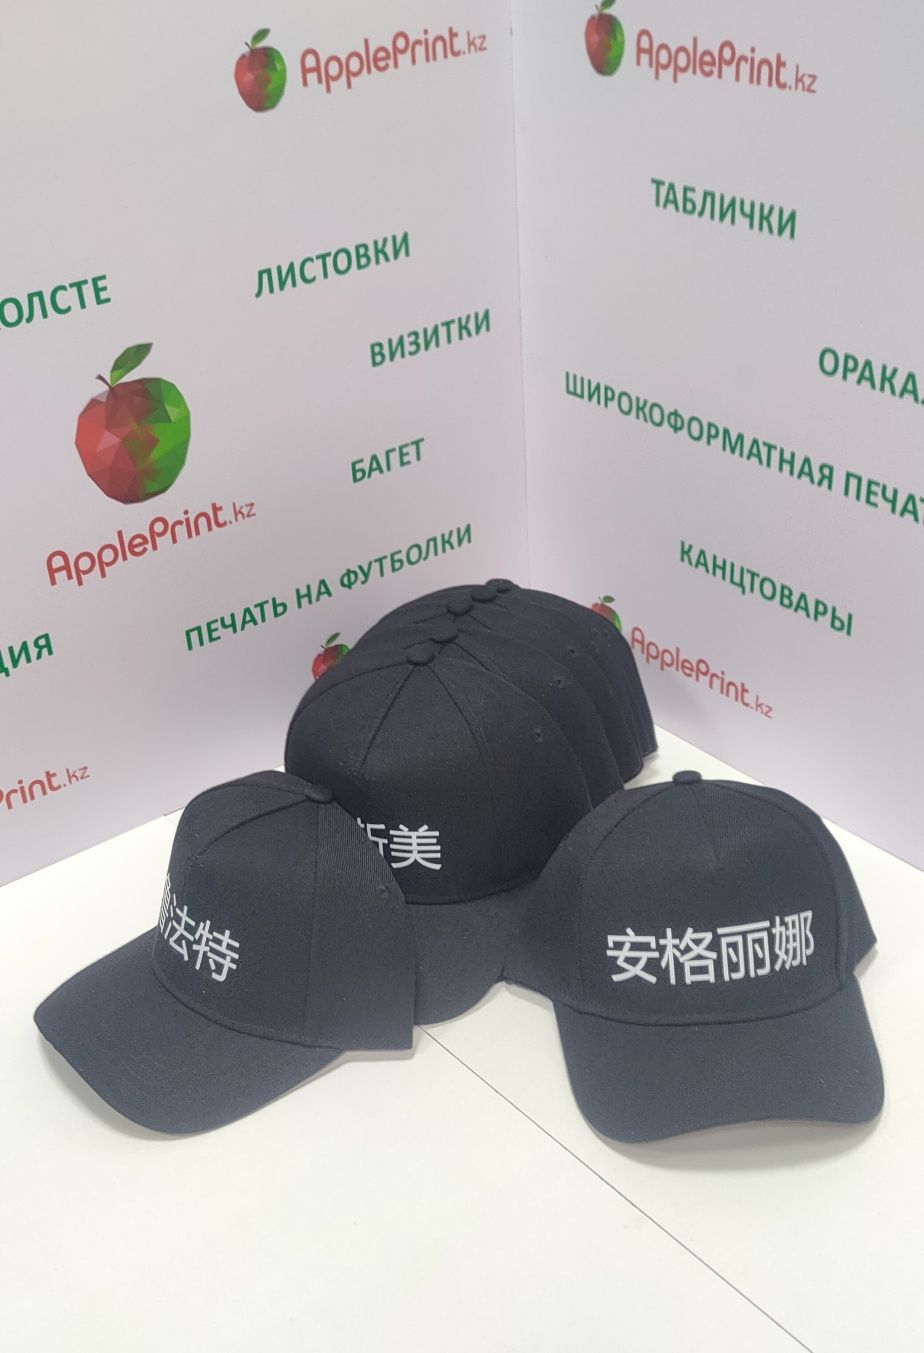 Печать на футболках, брендирование кепки, одежды, ткани, кожа в Алматы